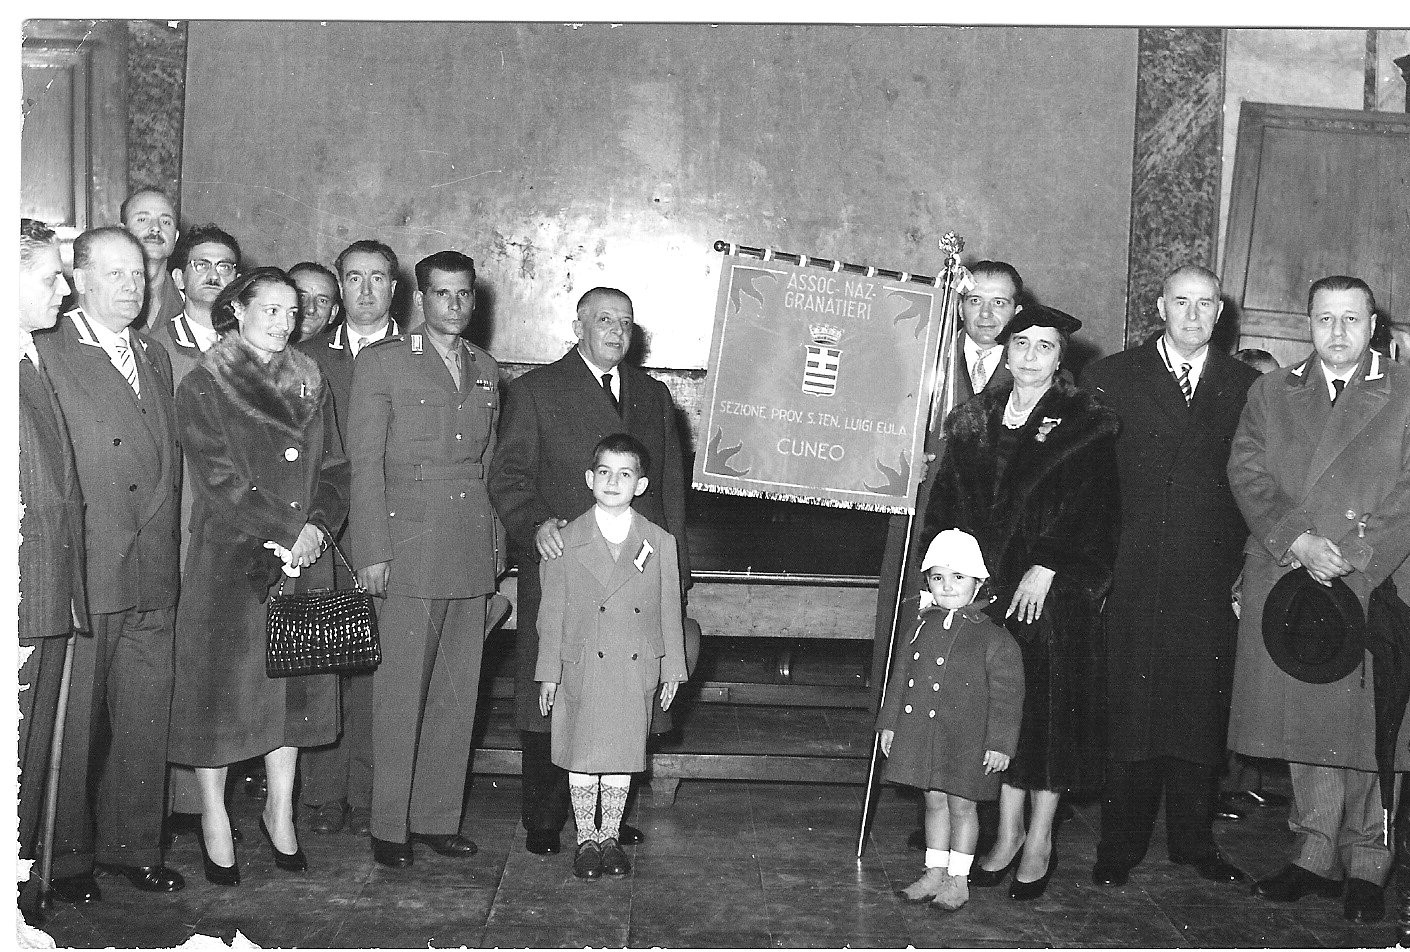 1959 - Cerimonia interno Duomo di Cuneo alla presenza dei genitori